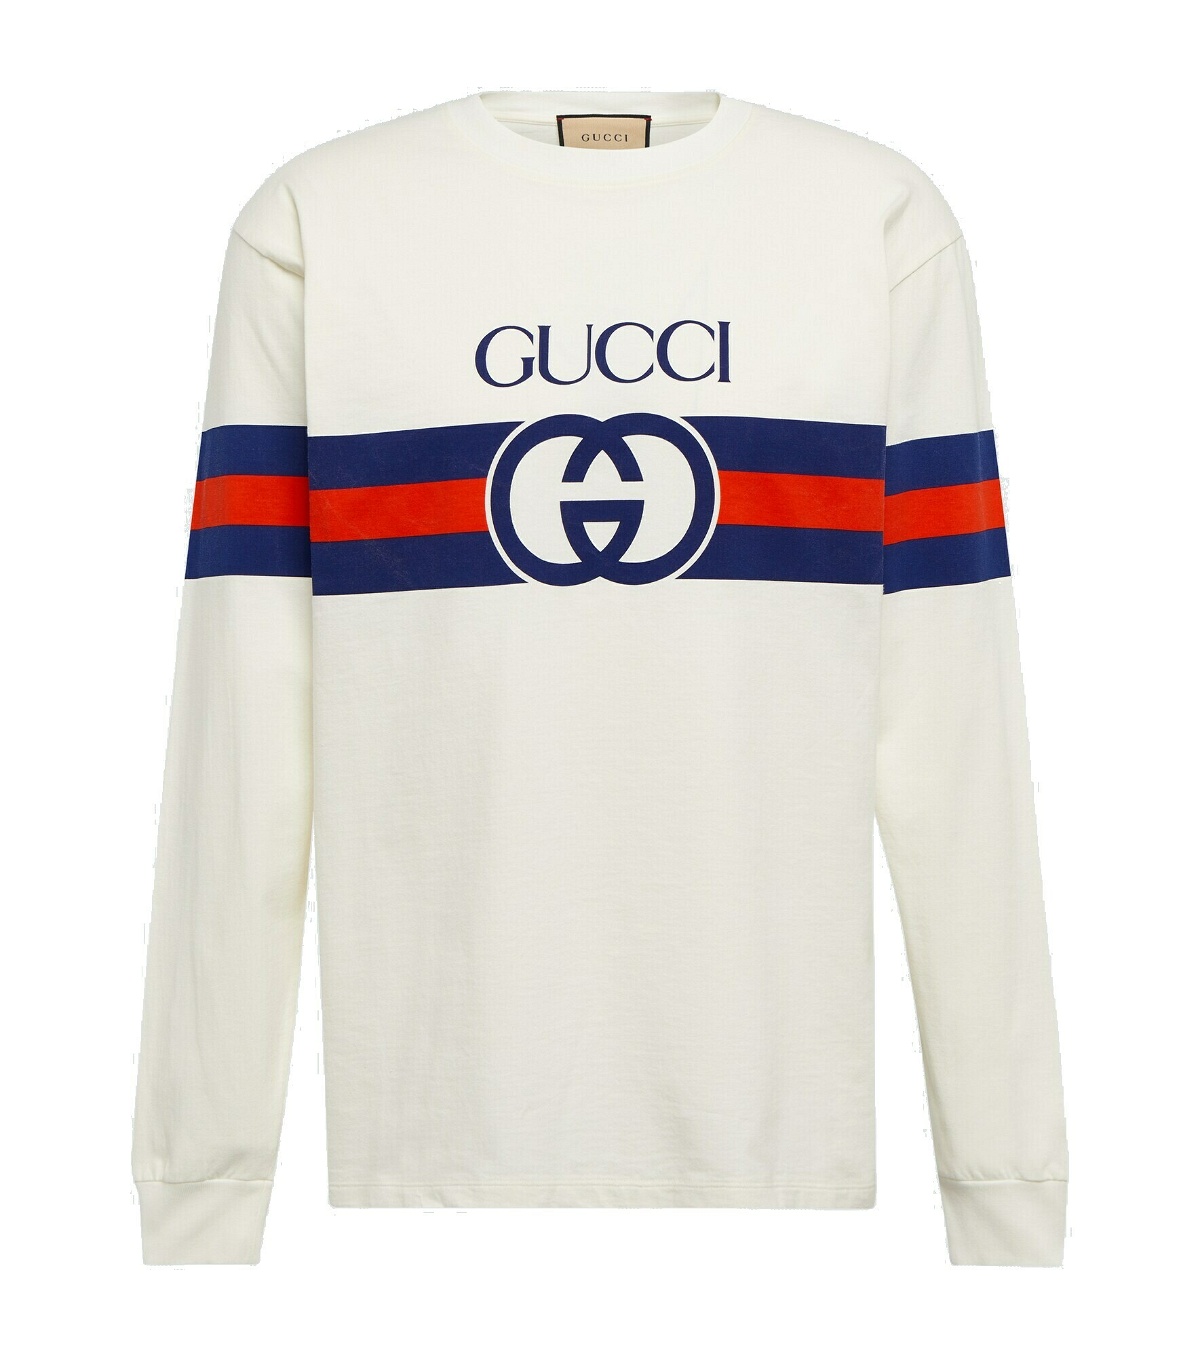 Gucci - Interlocking G cotton top Gucci